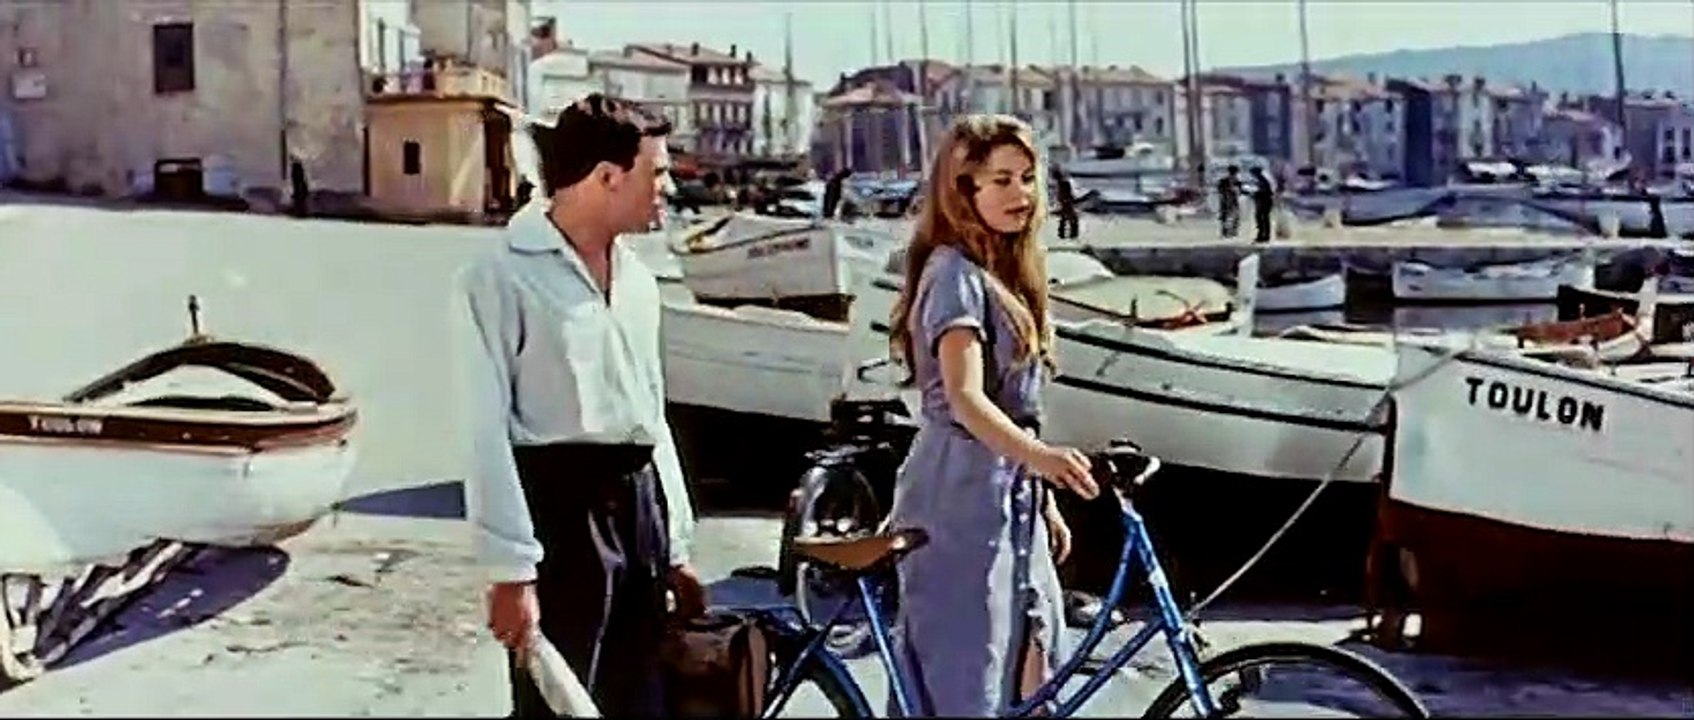 ...und immer lockt das Weib | movie | 1956 | Official Trailer